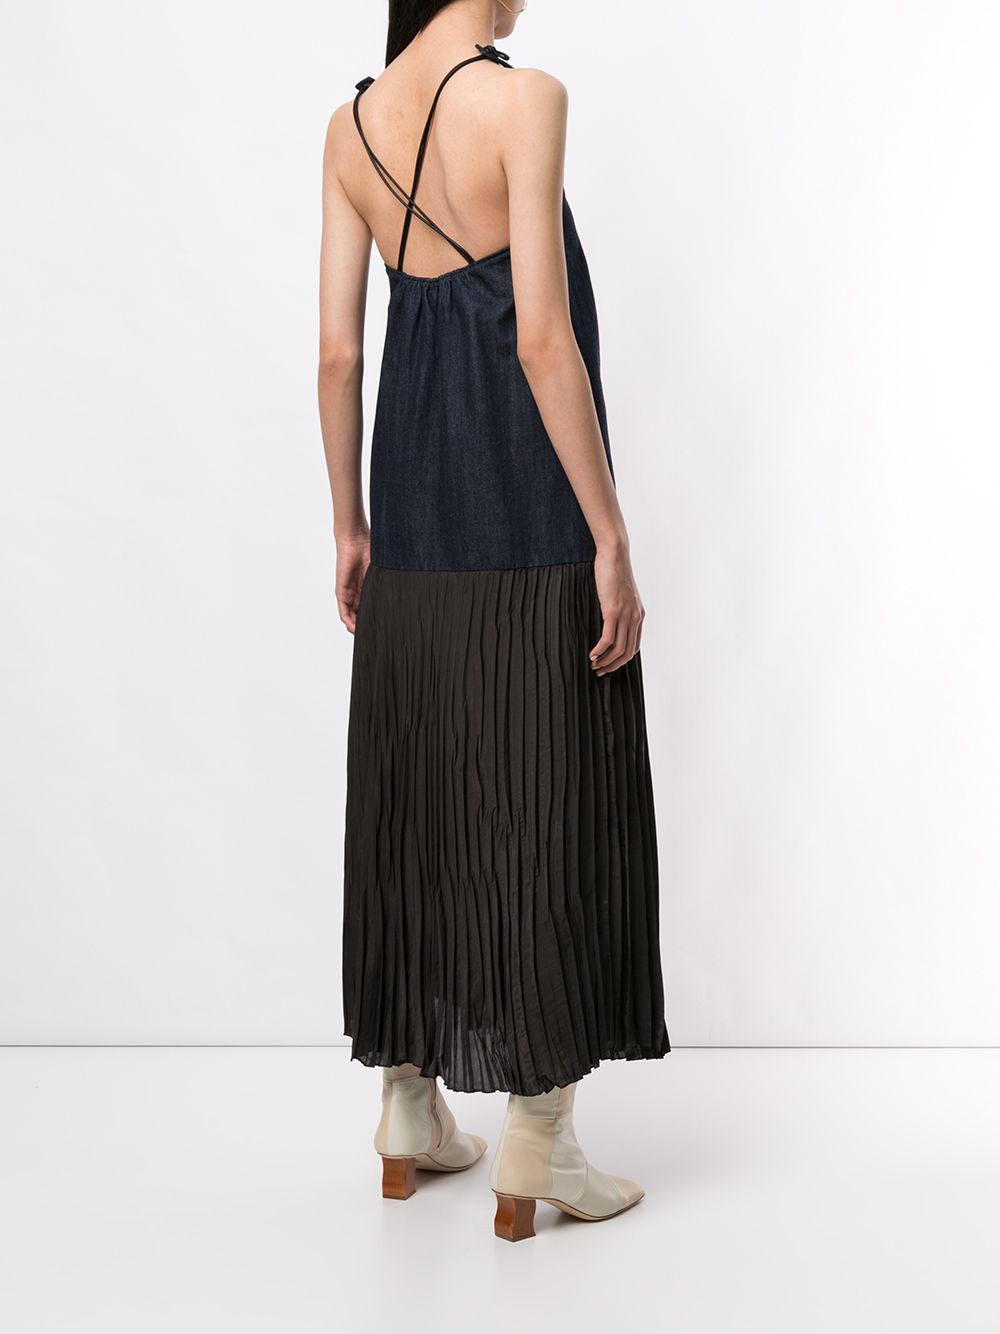 фото Muller of yoshiokubo джинсовое платье без рукавов с плиссировкой